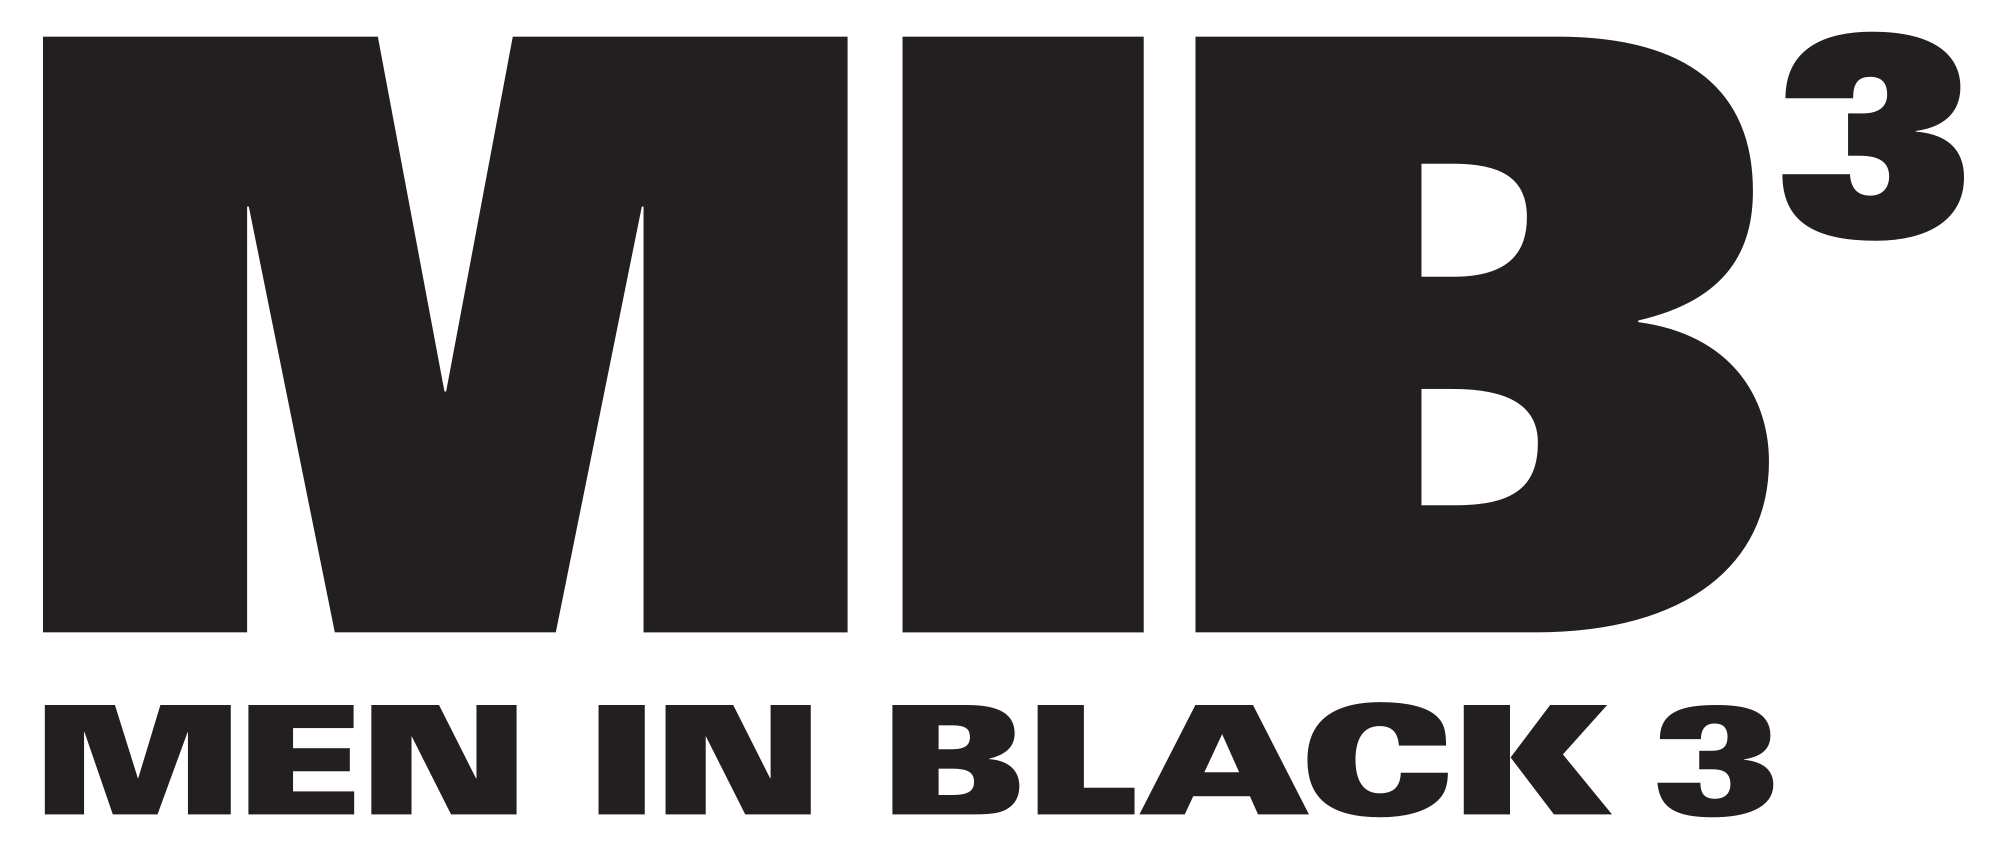 Men in Black 3 Logo - File:Men in black 3.svg - Wikimedia Commons